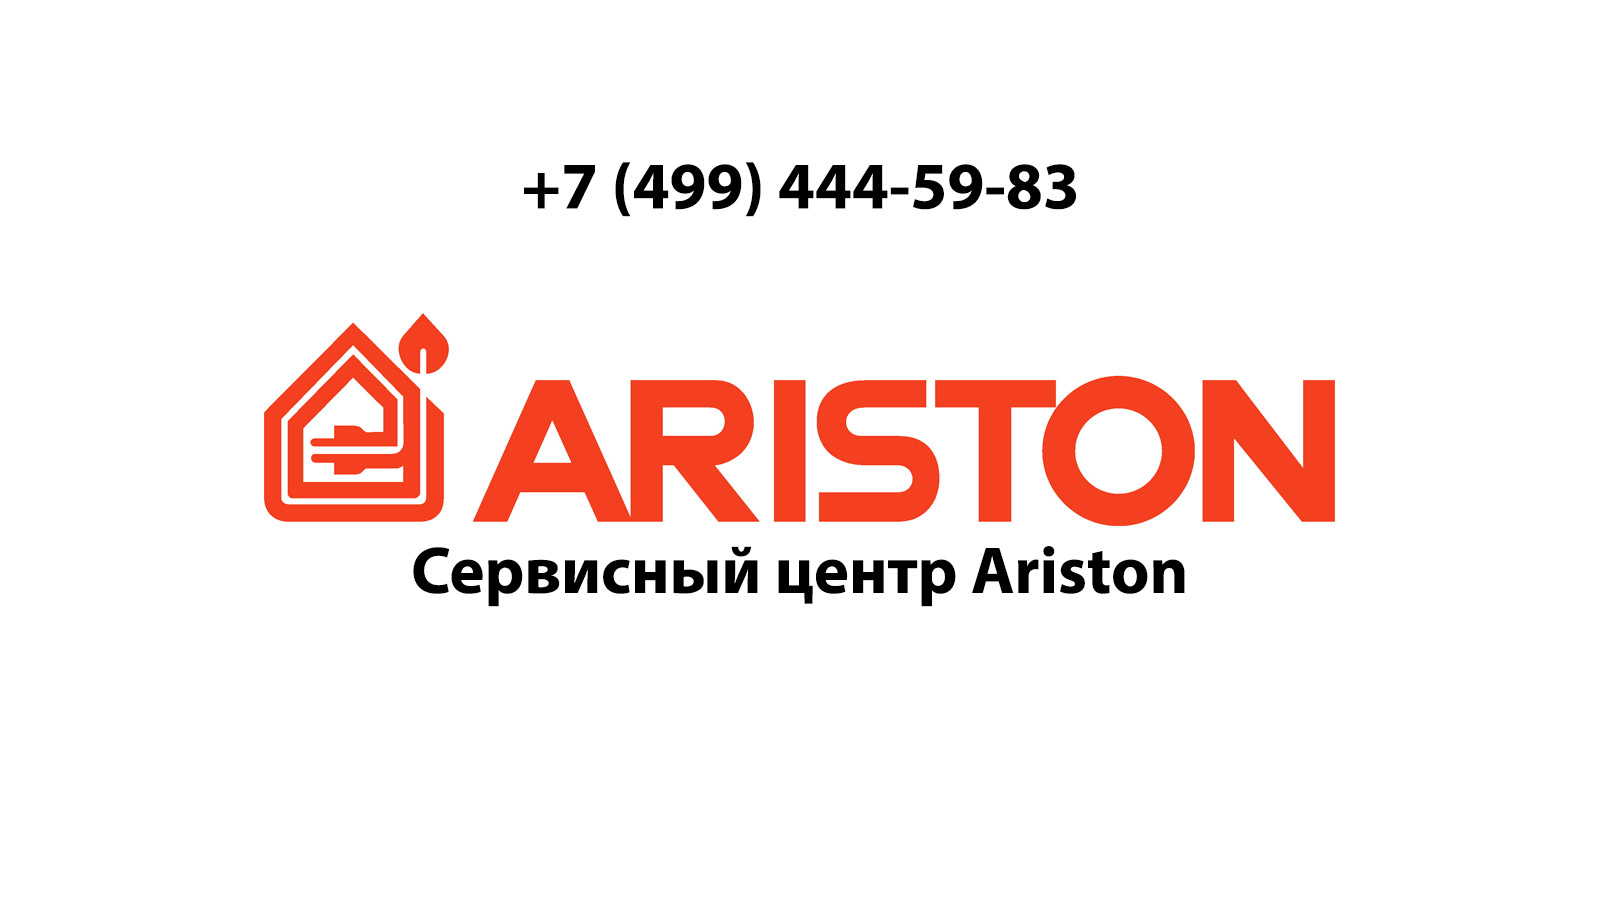 Аристон сервисный ariston help. Ariston service. Реклама Аристон. Ariston котлы логотип. Сервисный центр Аристон.